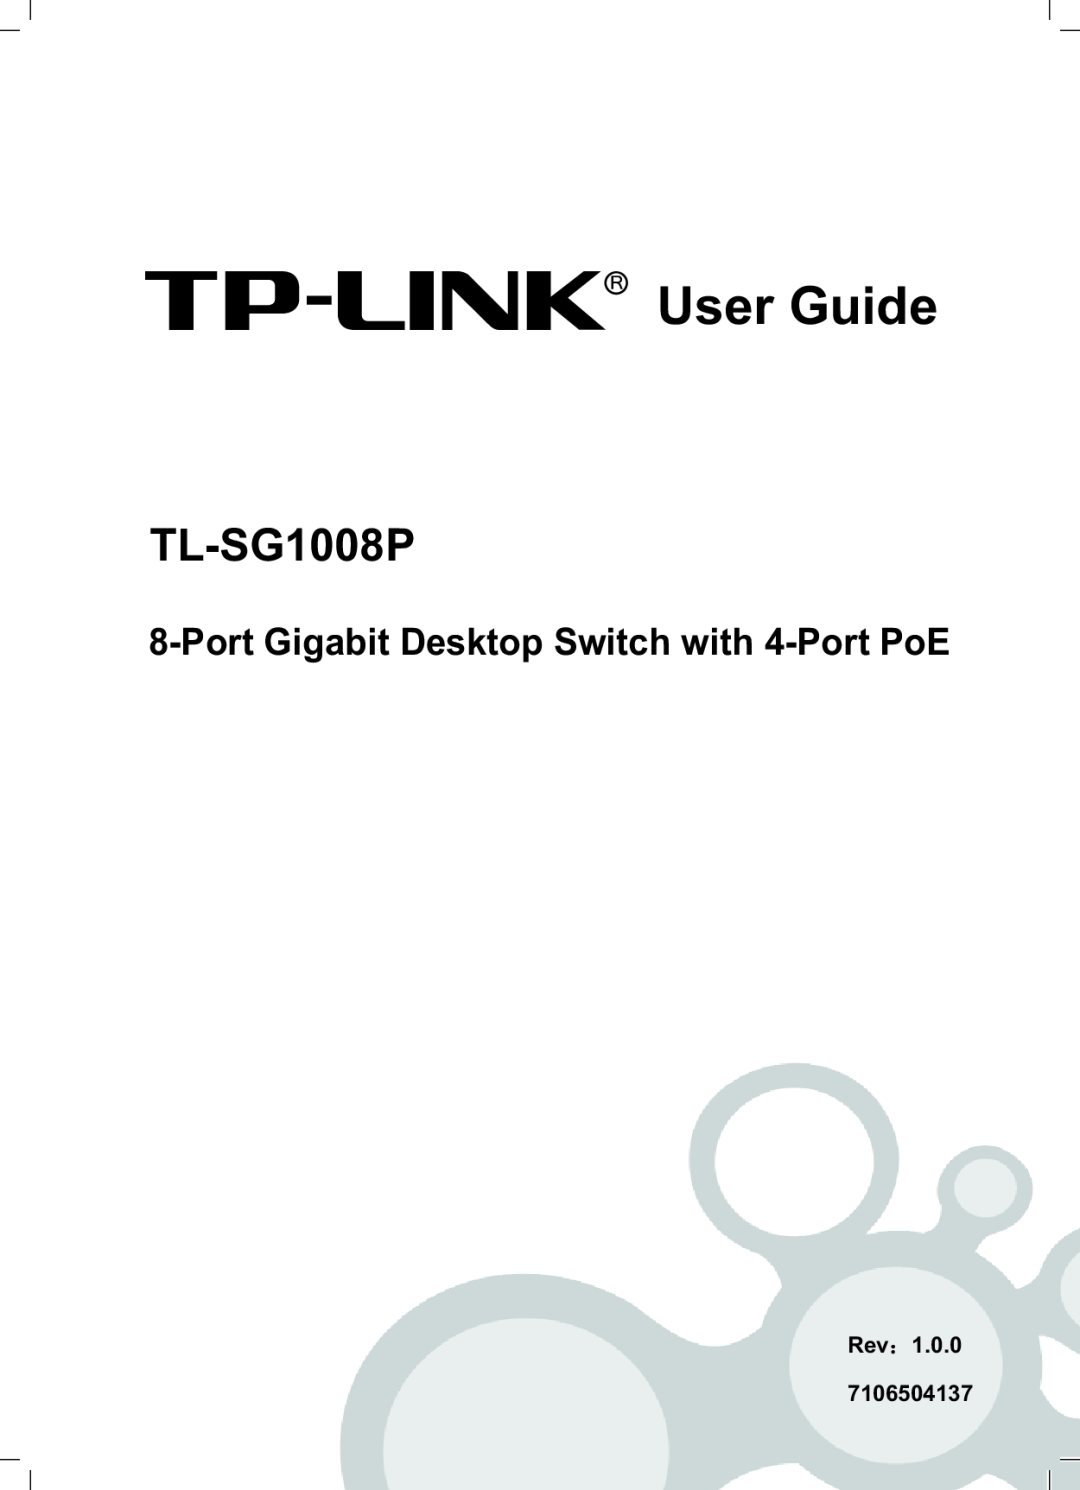 TP-Link TL-SG1008P manual Port Gigabit Desktop Switch with 4-Port PoE, User Guide, Rev 7106504137 